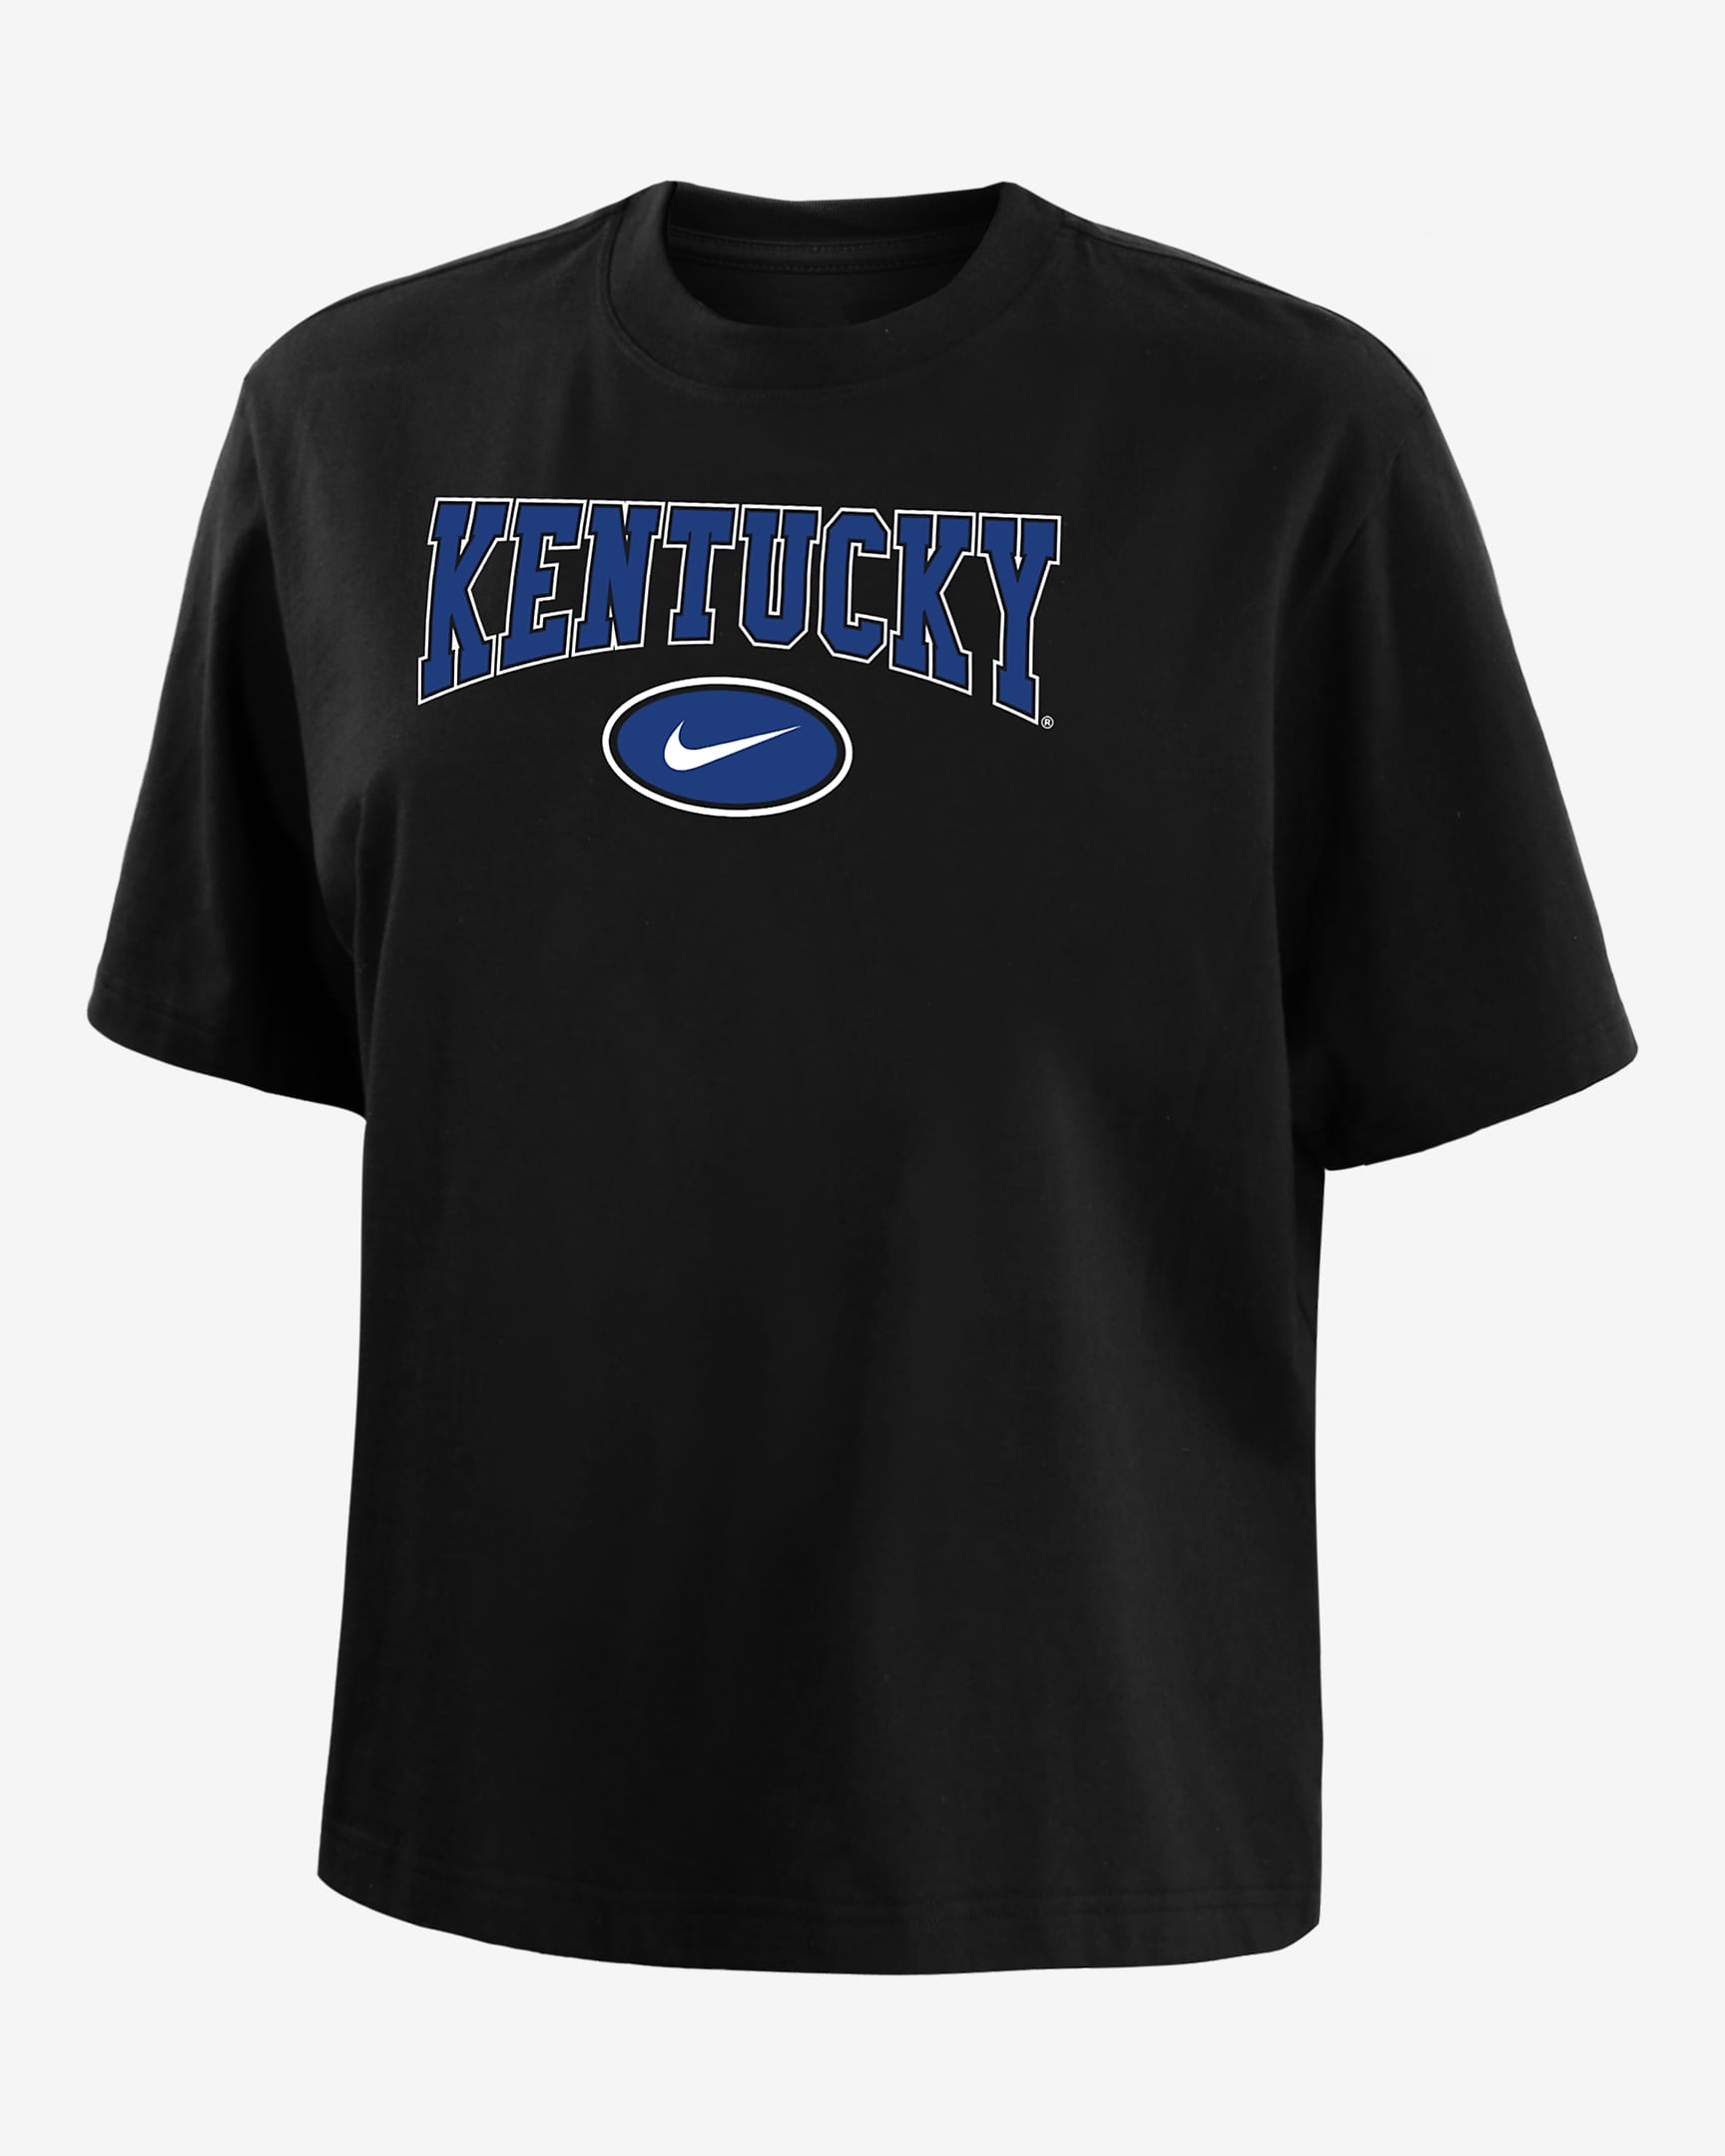 Kentucky Women's Nike College Boxy T-Shirt. Nike.com